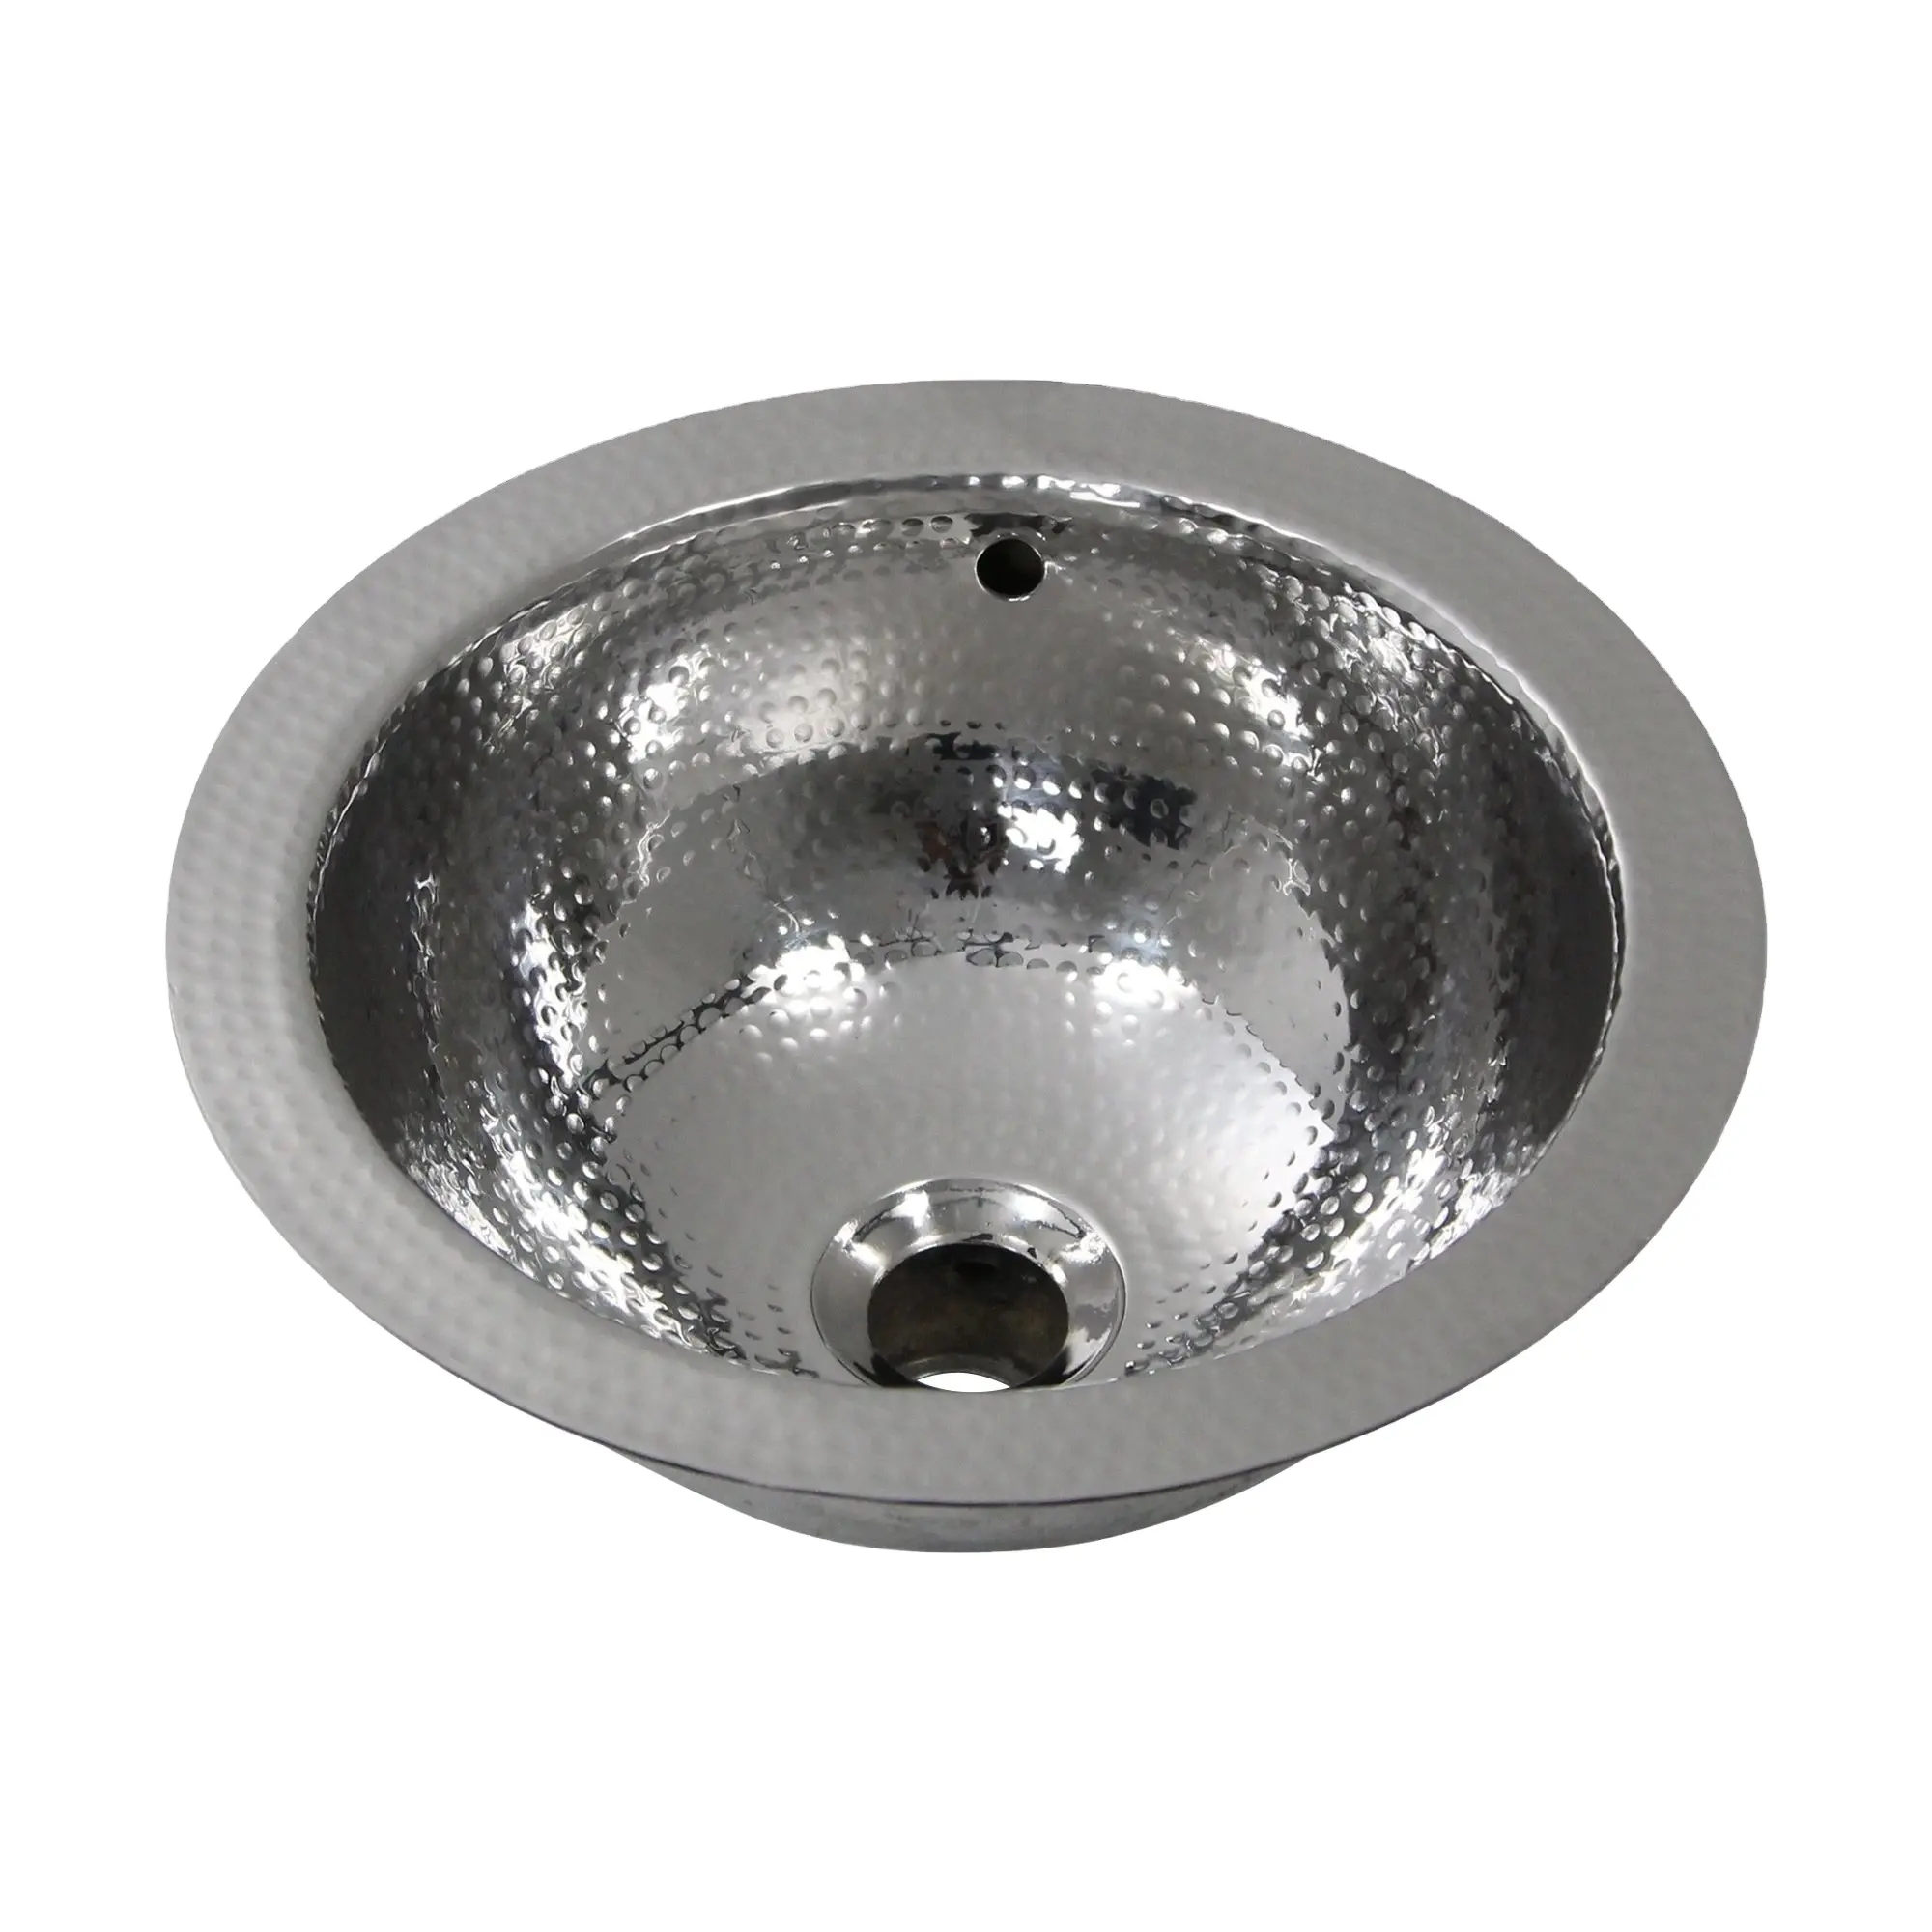 304 stainless steel kitchen hammered round sink small round hammered bathroom sink shape design